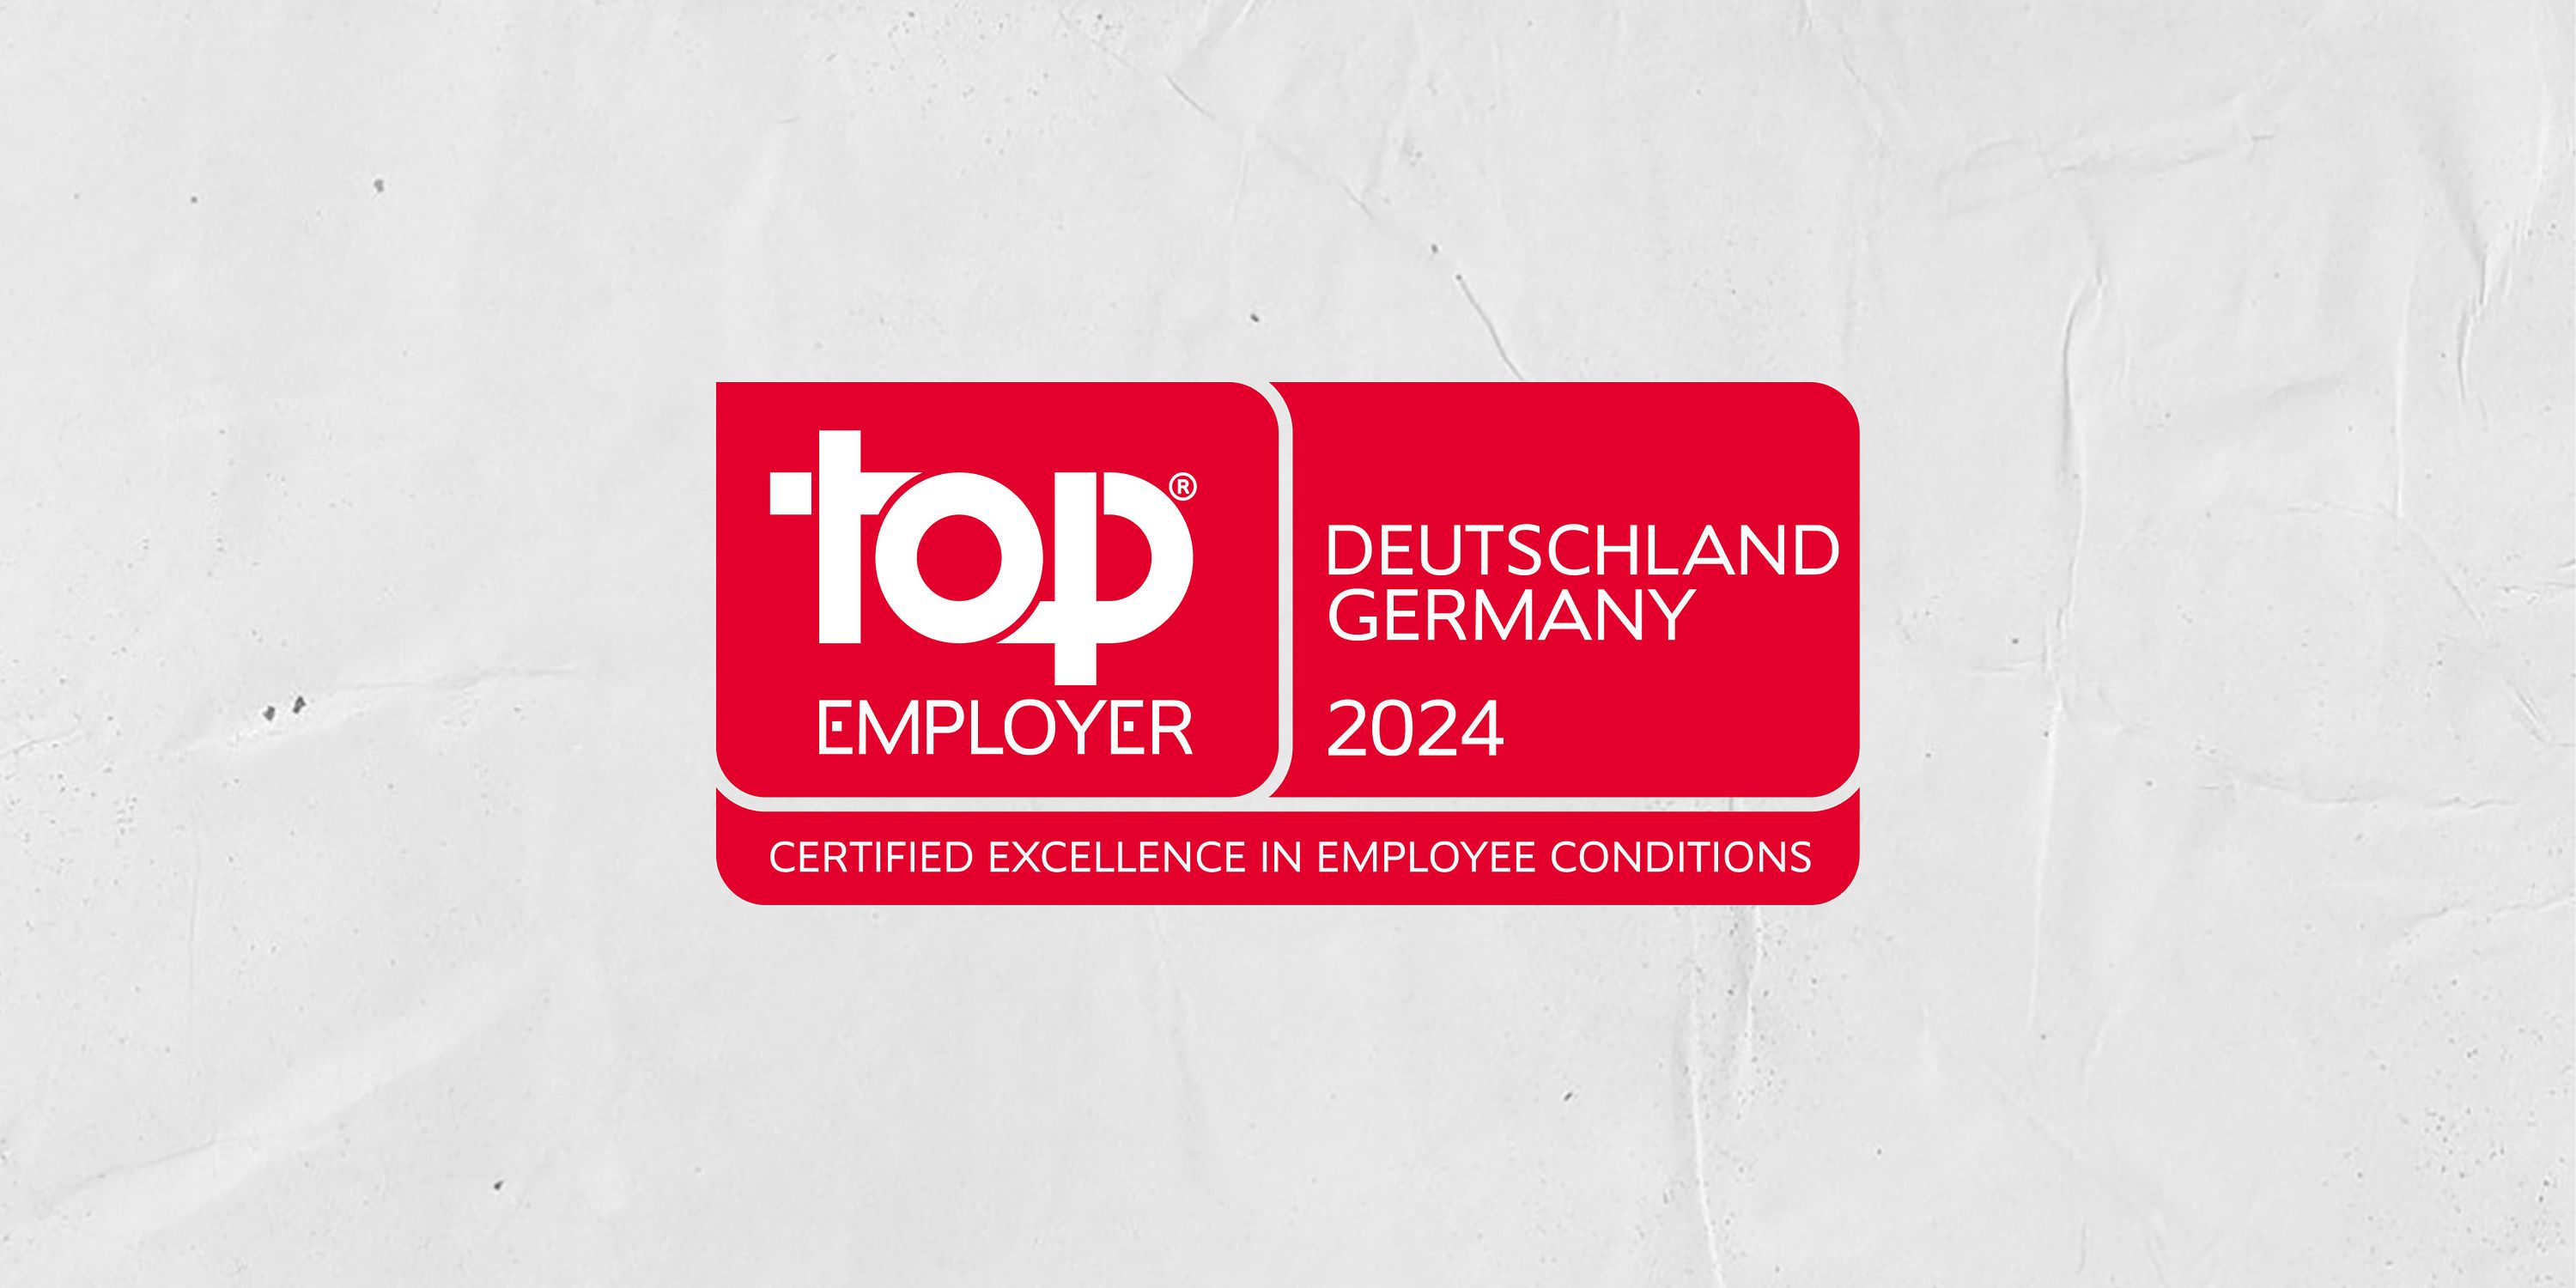 TSystems ist Top Employer 2024 in Deutschland Deutsche Telekom